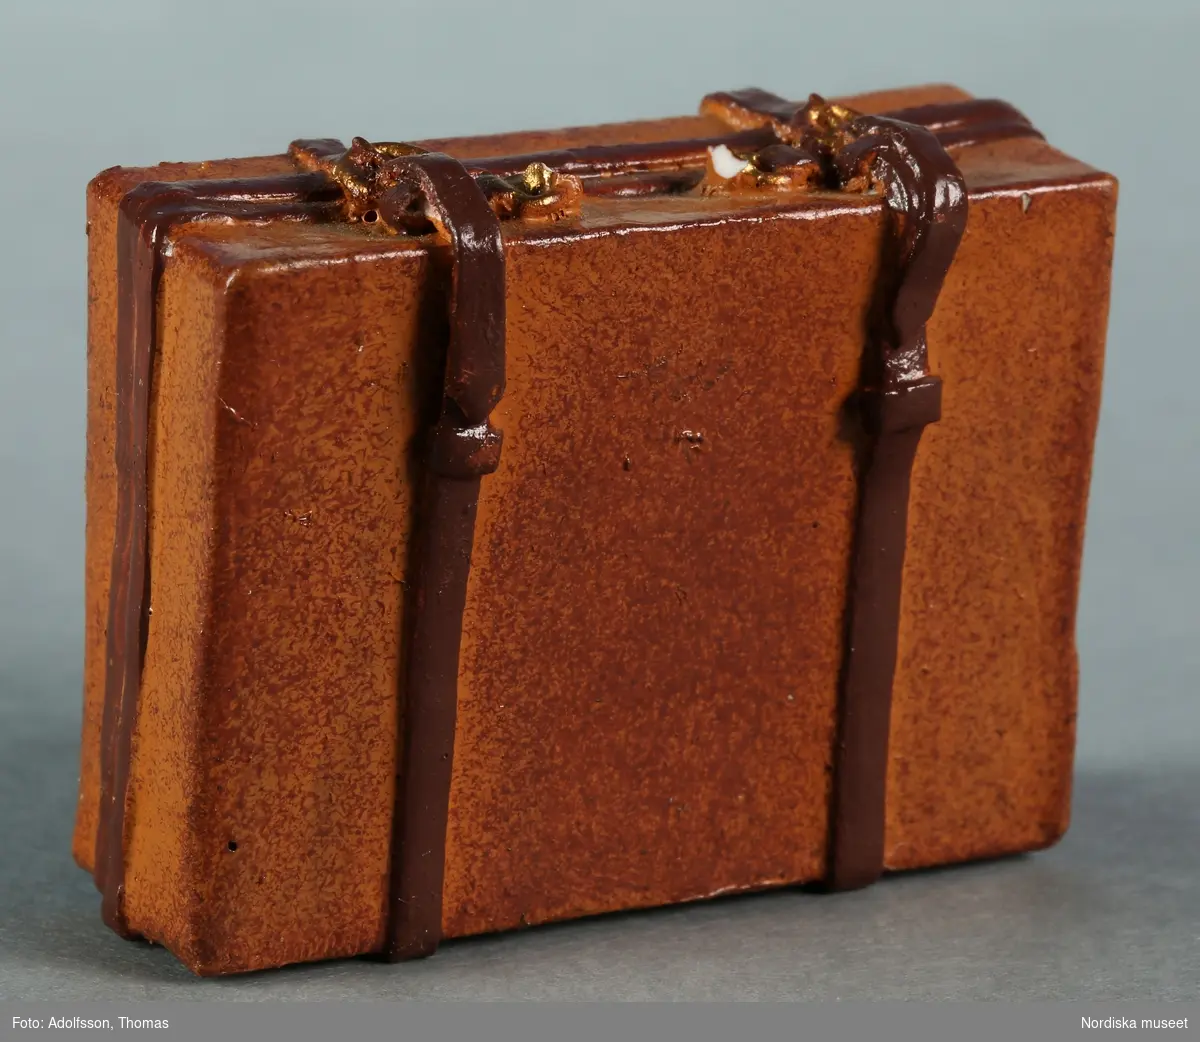 Resväska tillverkad av gips eller konstmassa och målad i två olika bruna nyanser. Ska stå i dockskåpets vindsutrymme.